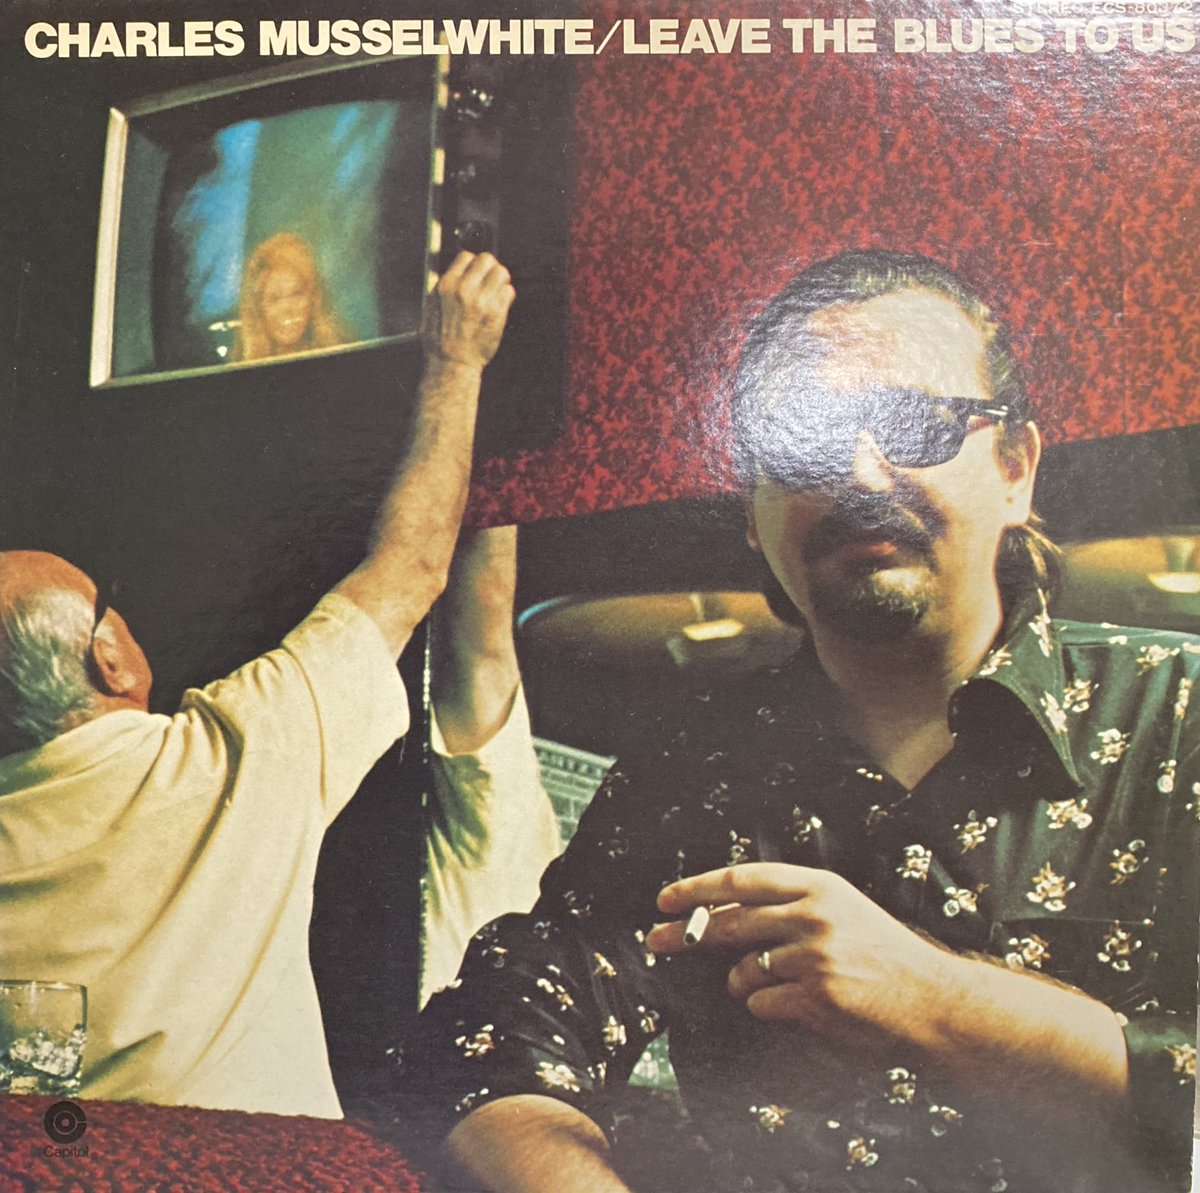 今日の1曲！
Charlie Musselwhite, 
Candy Kitchen.
youtube.com/watch?v=pL7e_Z…
#blues
#bluesharp 
#charliemusselwhite